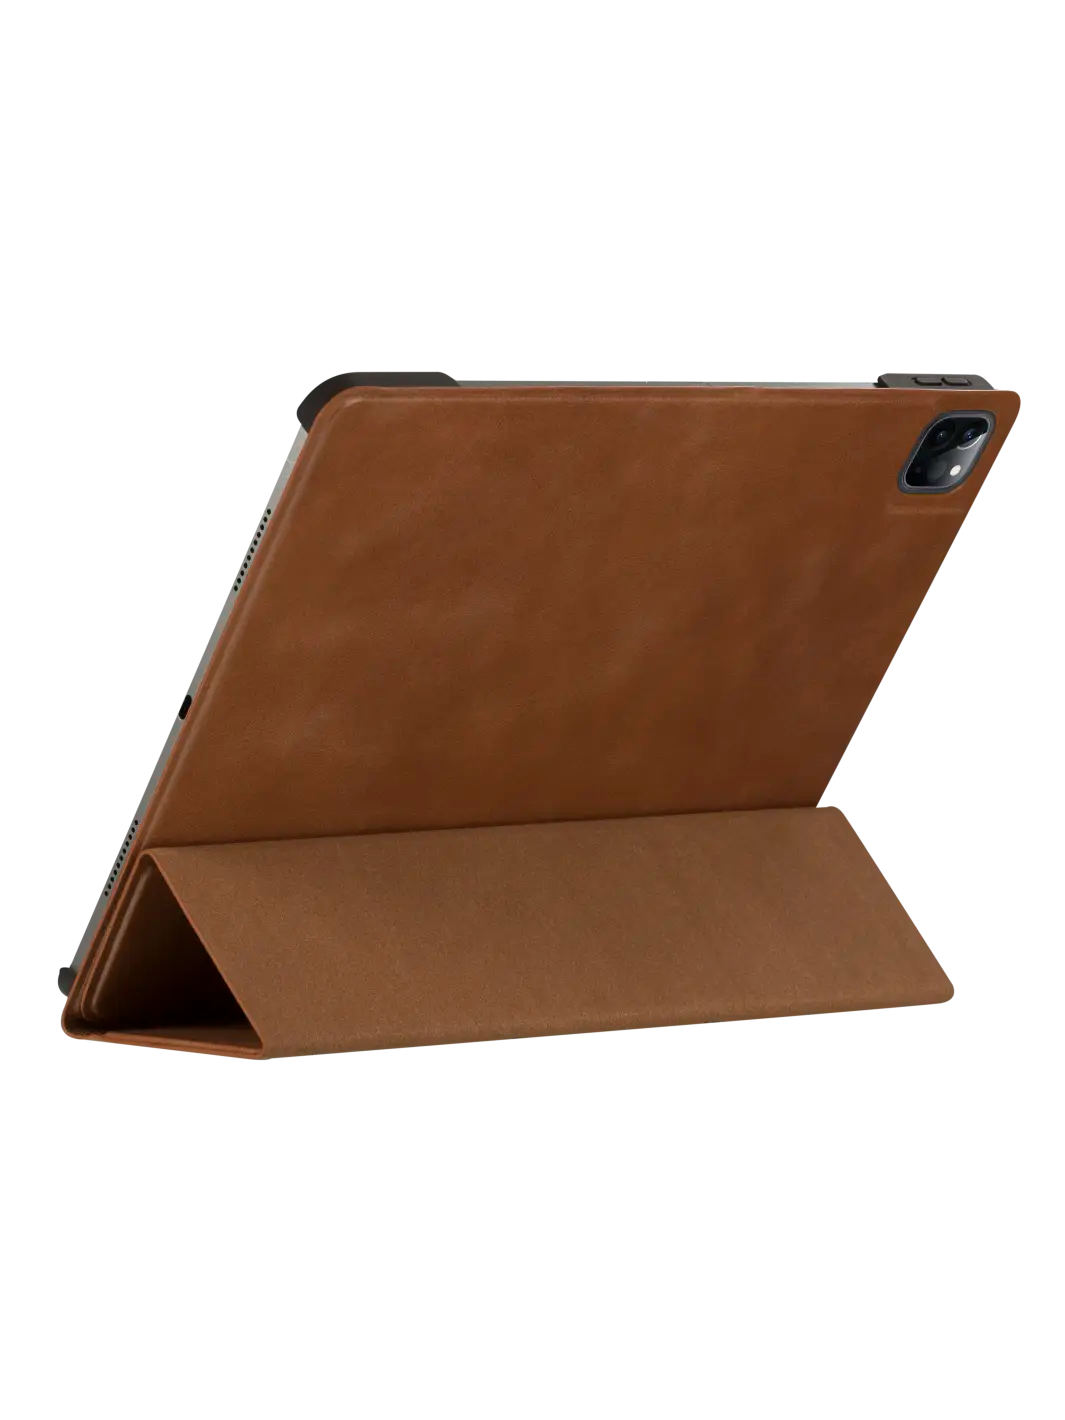 Risskov iPad case Tan iPad Pro 12.9" (5th/6th Gen) iPad Cases